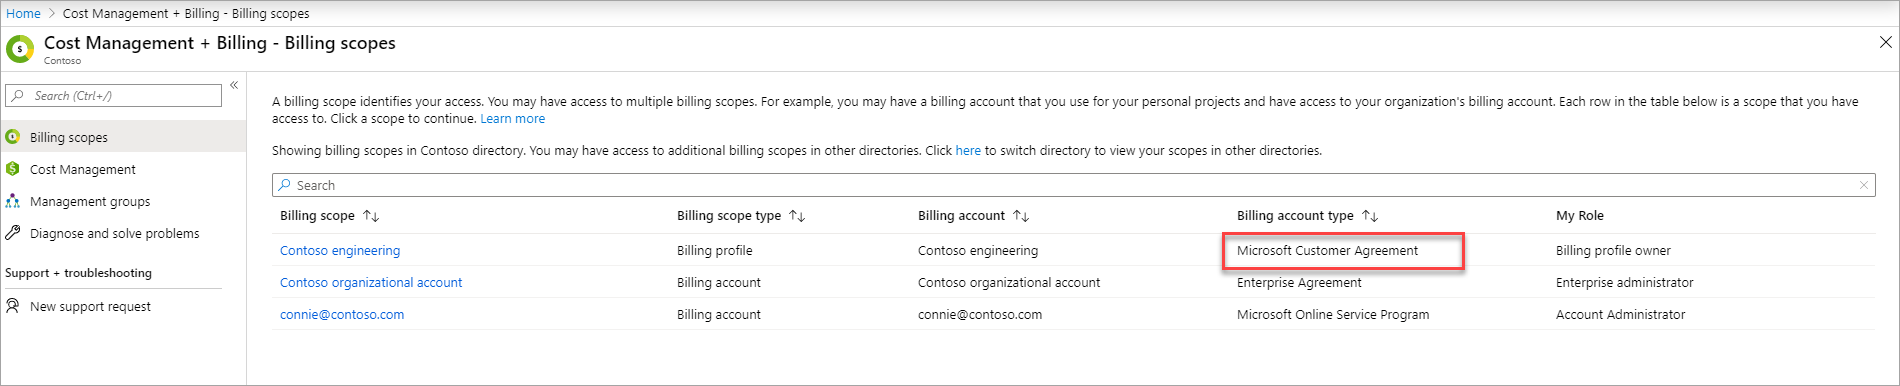 Suivre le solde de crédit Azure d'un Contrat client Microsoft - Microsoft  Cost Management | Microsoft Learn